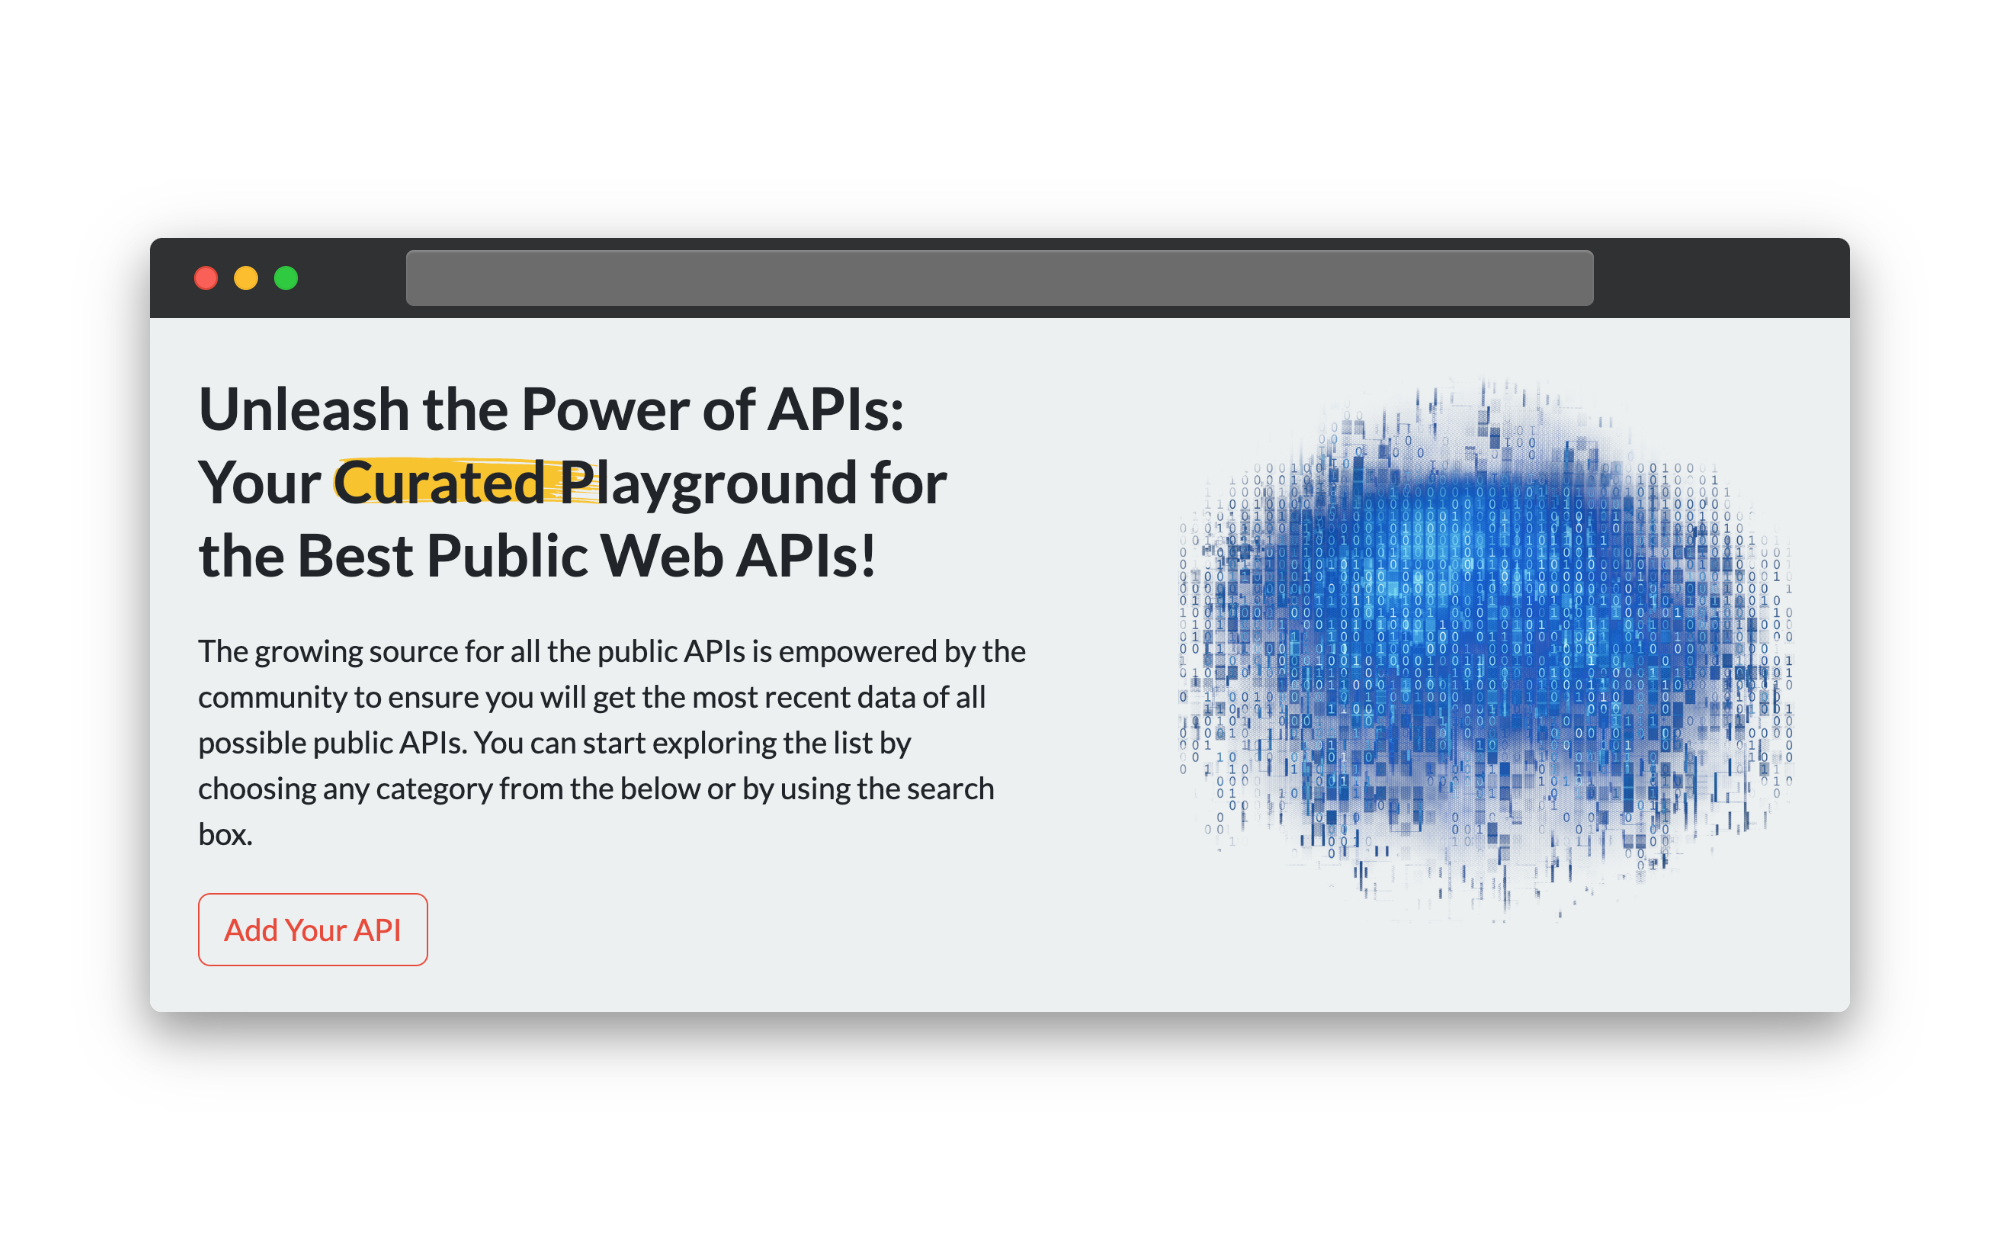 Steam API — Public APIs